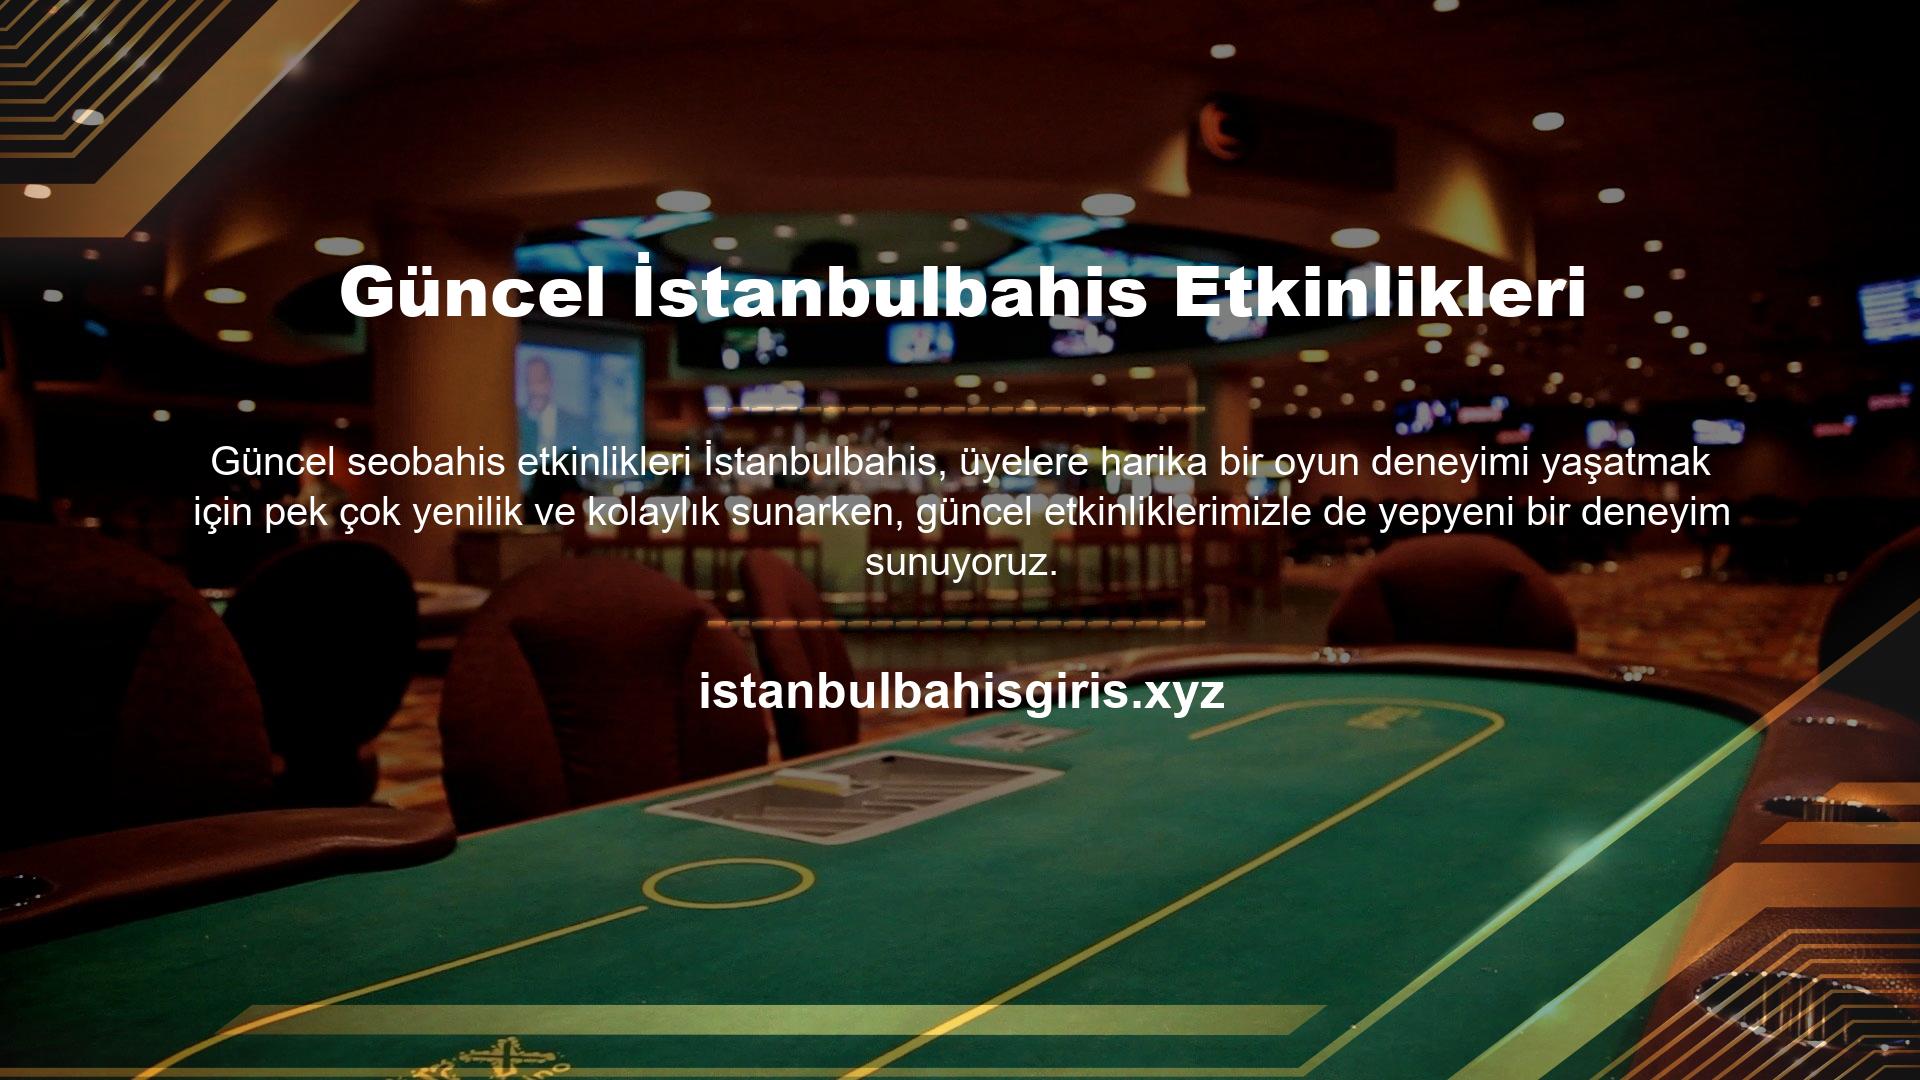 Tüm bu kampanyalar İstanbulbahis ana sayfasında ve İstanbulbahis ana sayfasının sağ üst köşesinde bulunan "İşlemler" sekmesine tıklanarak görüntülenebilir